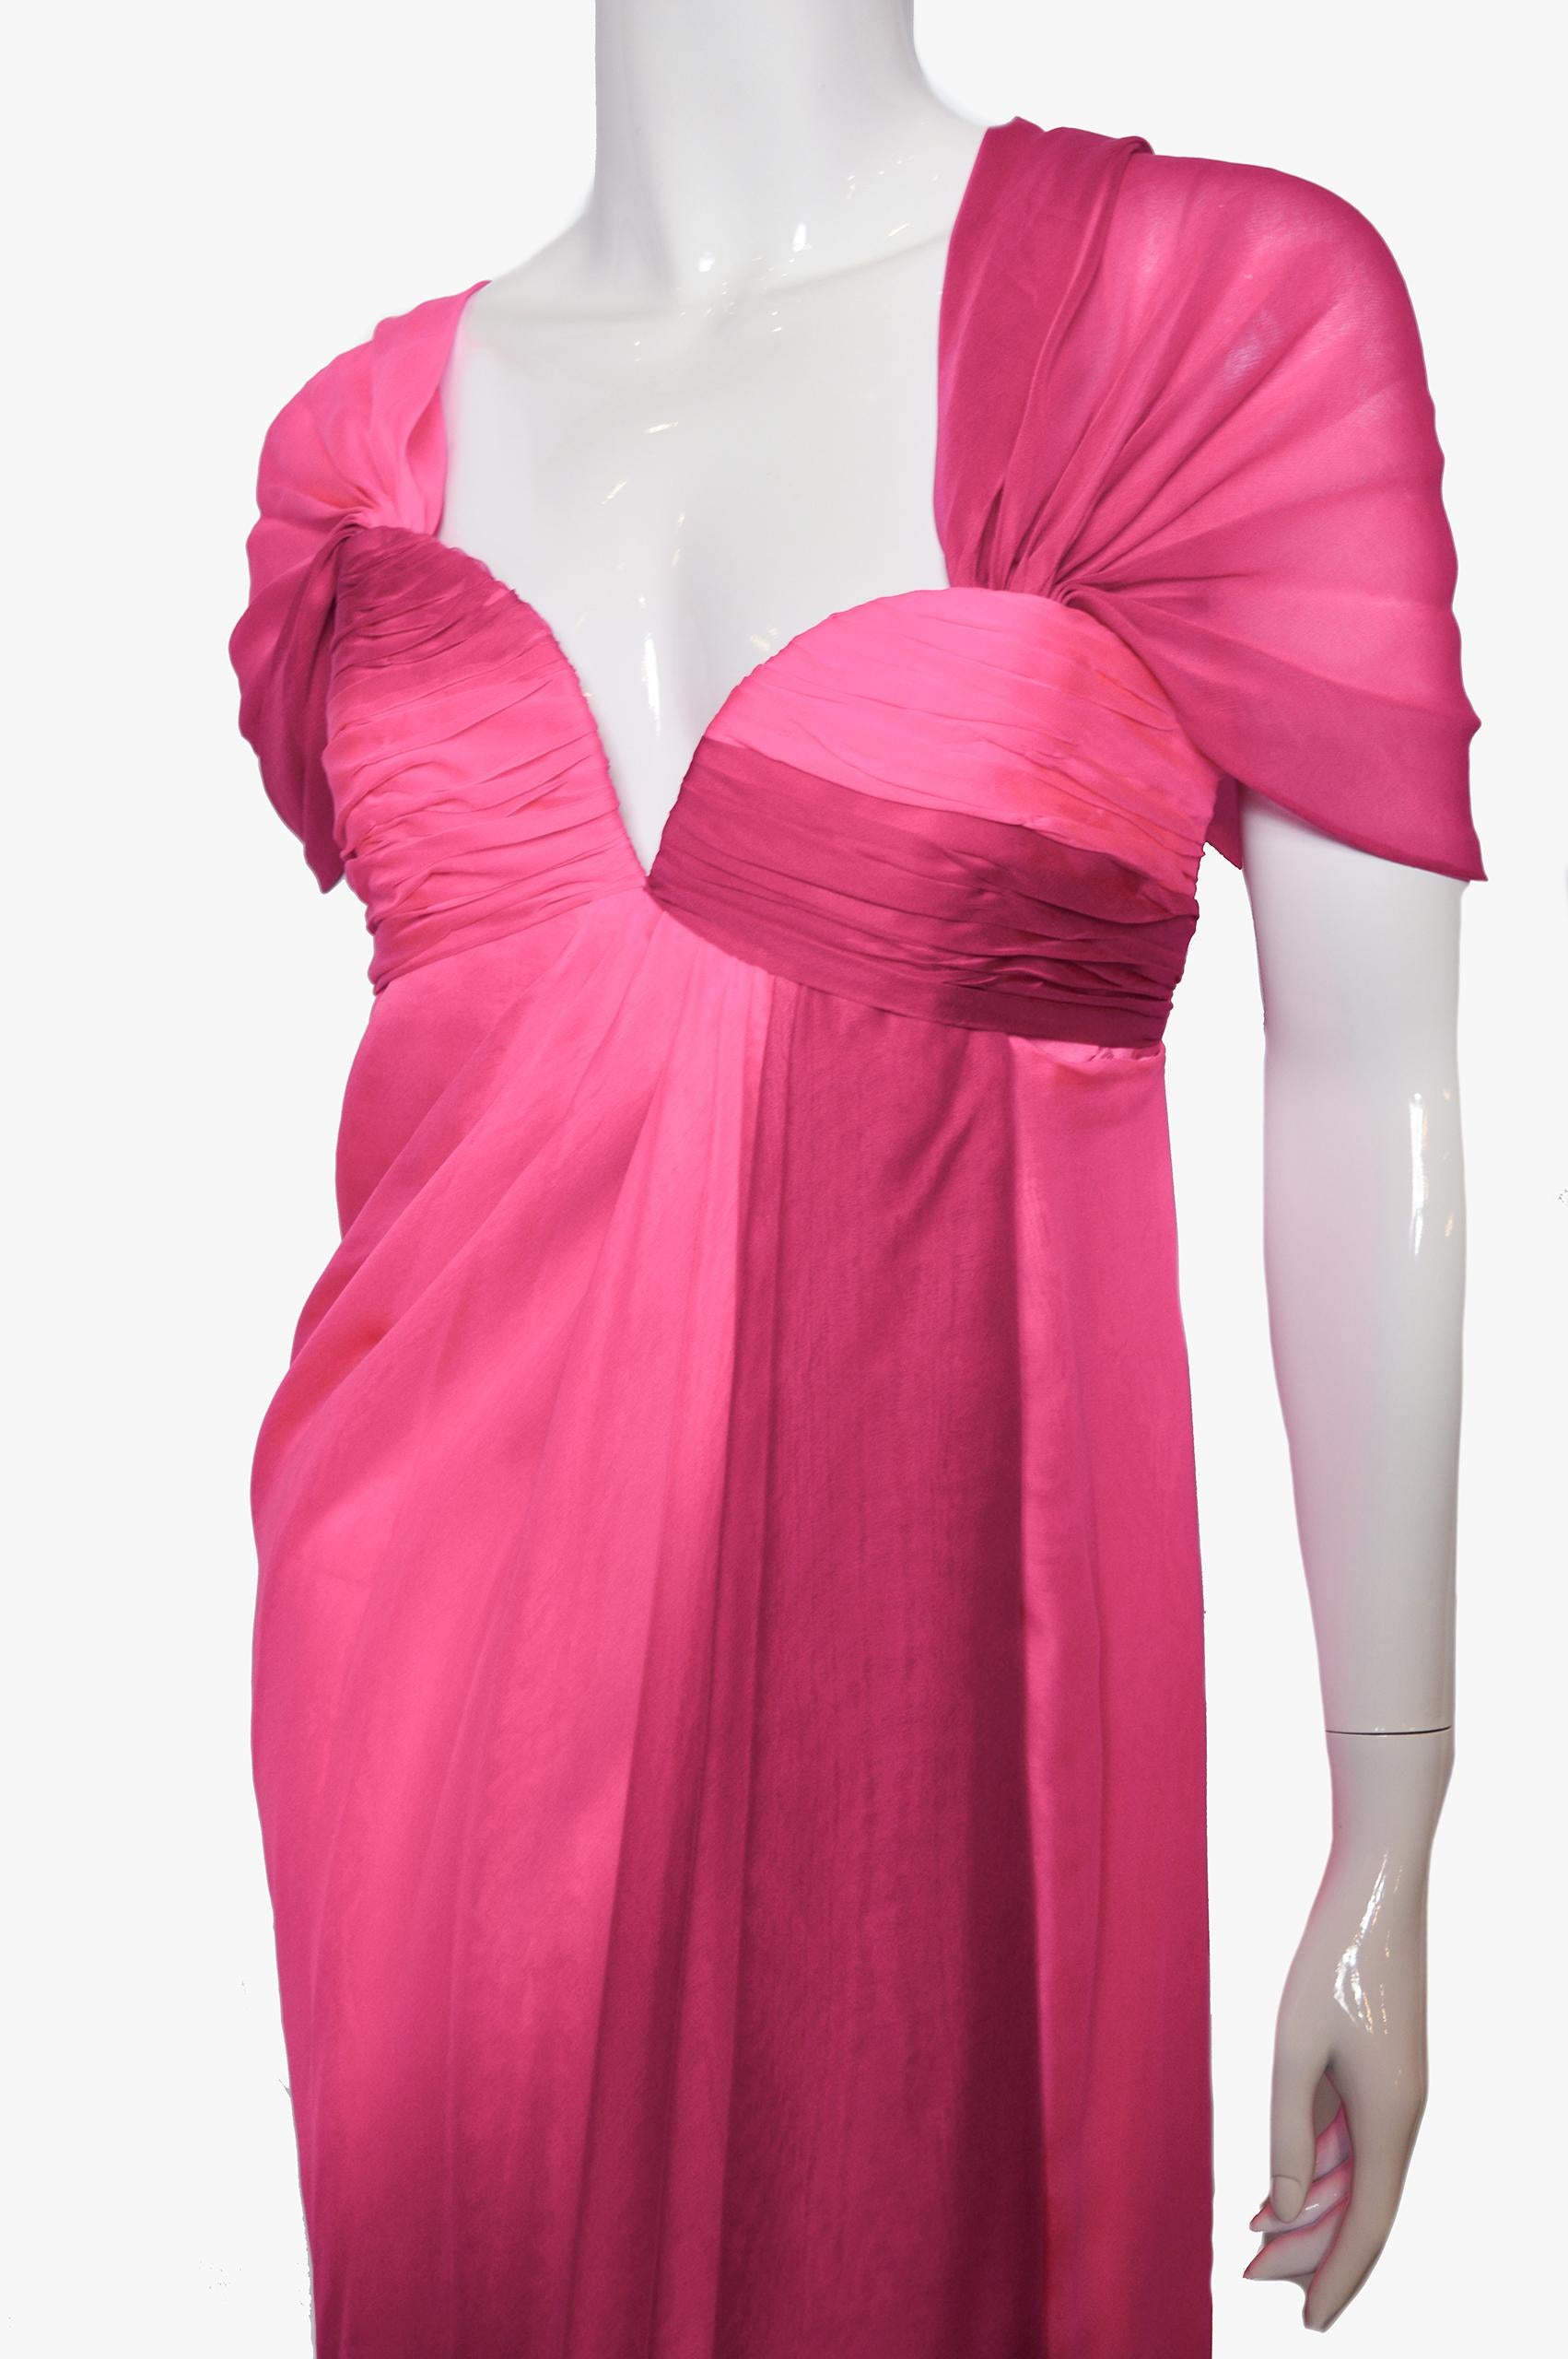 Ein atemberaubendes Vintage-Abendkleid aus Seide von ODICINI Couture aus den 1980er Jahren.

Das Mieder des Kleides ist geschient und hat einen tiefen Herzausschnitt, der mit einem seitlichen Metallreißverschluss geschlossen wird.
Es hat interne